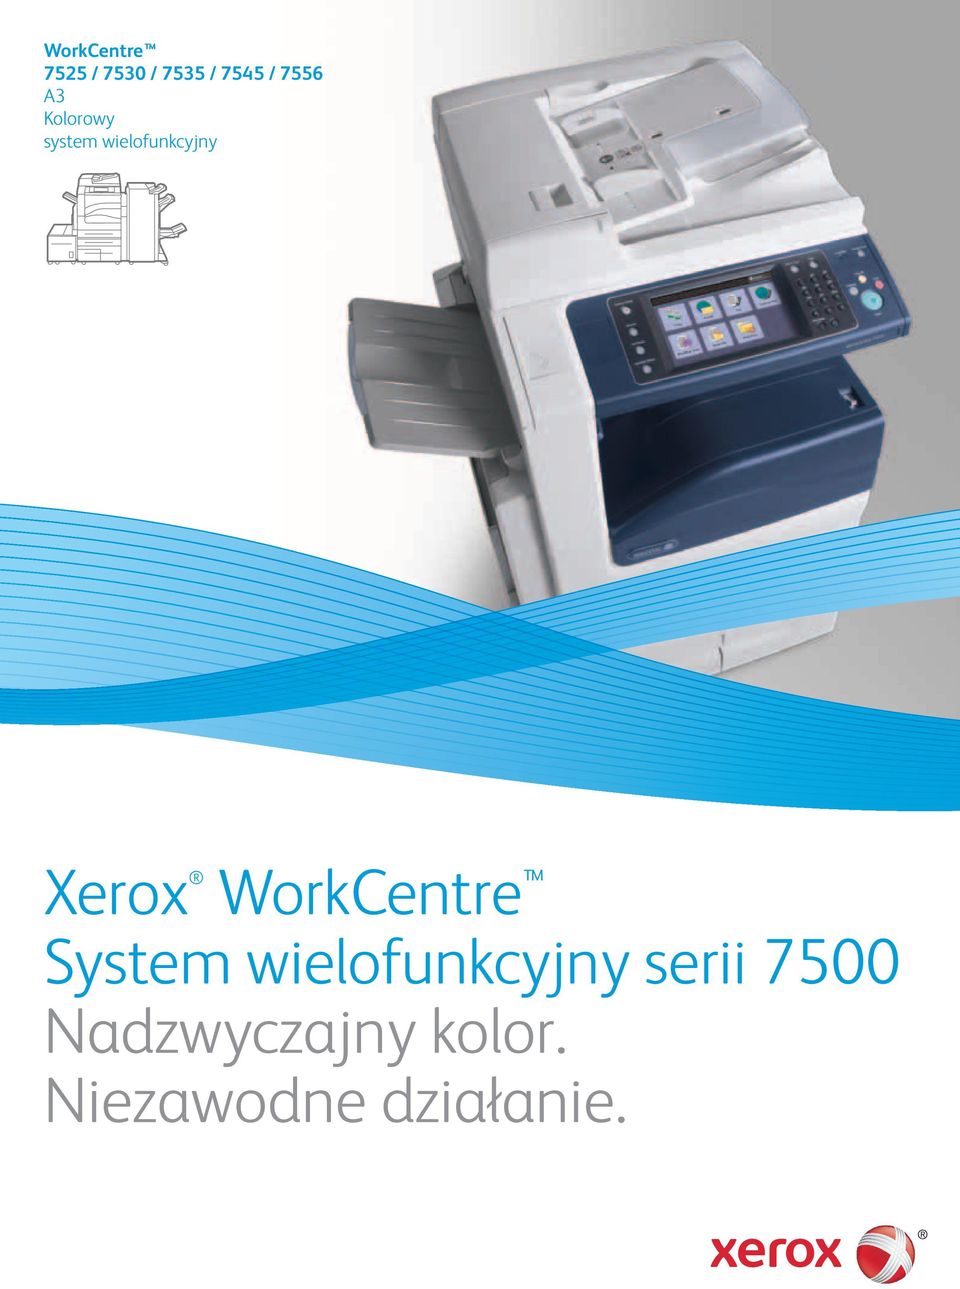 Xerox WorkCentre System wielofunkcyjny